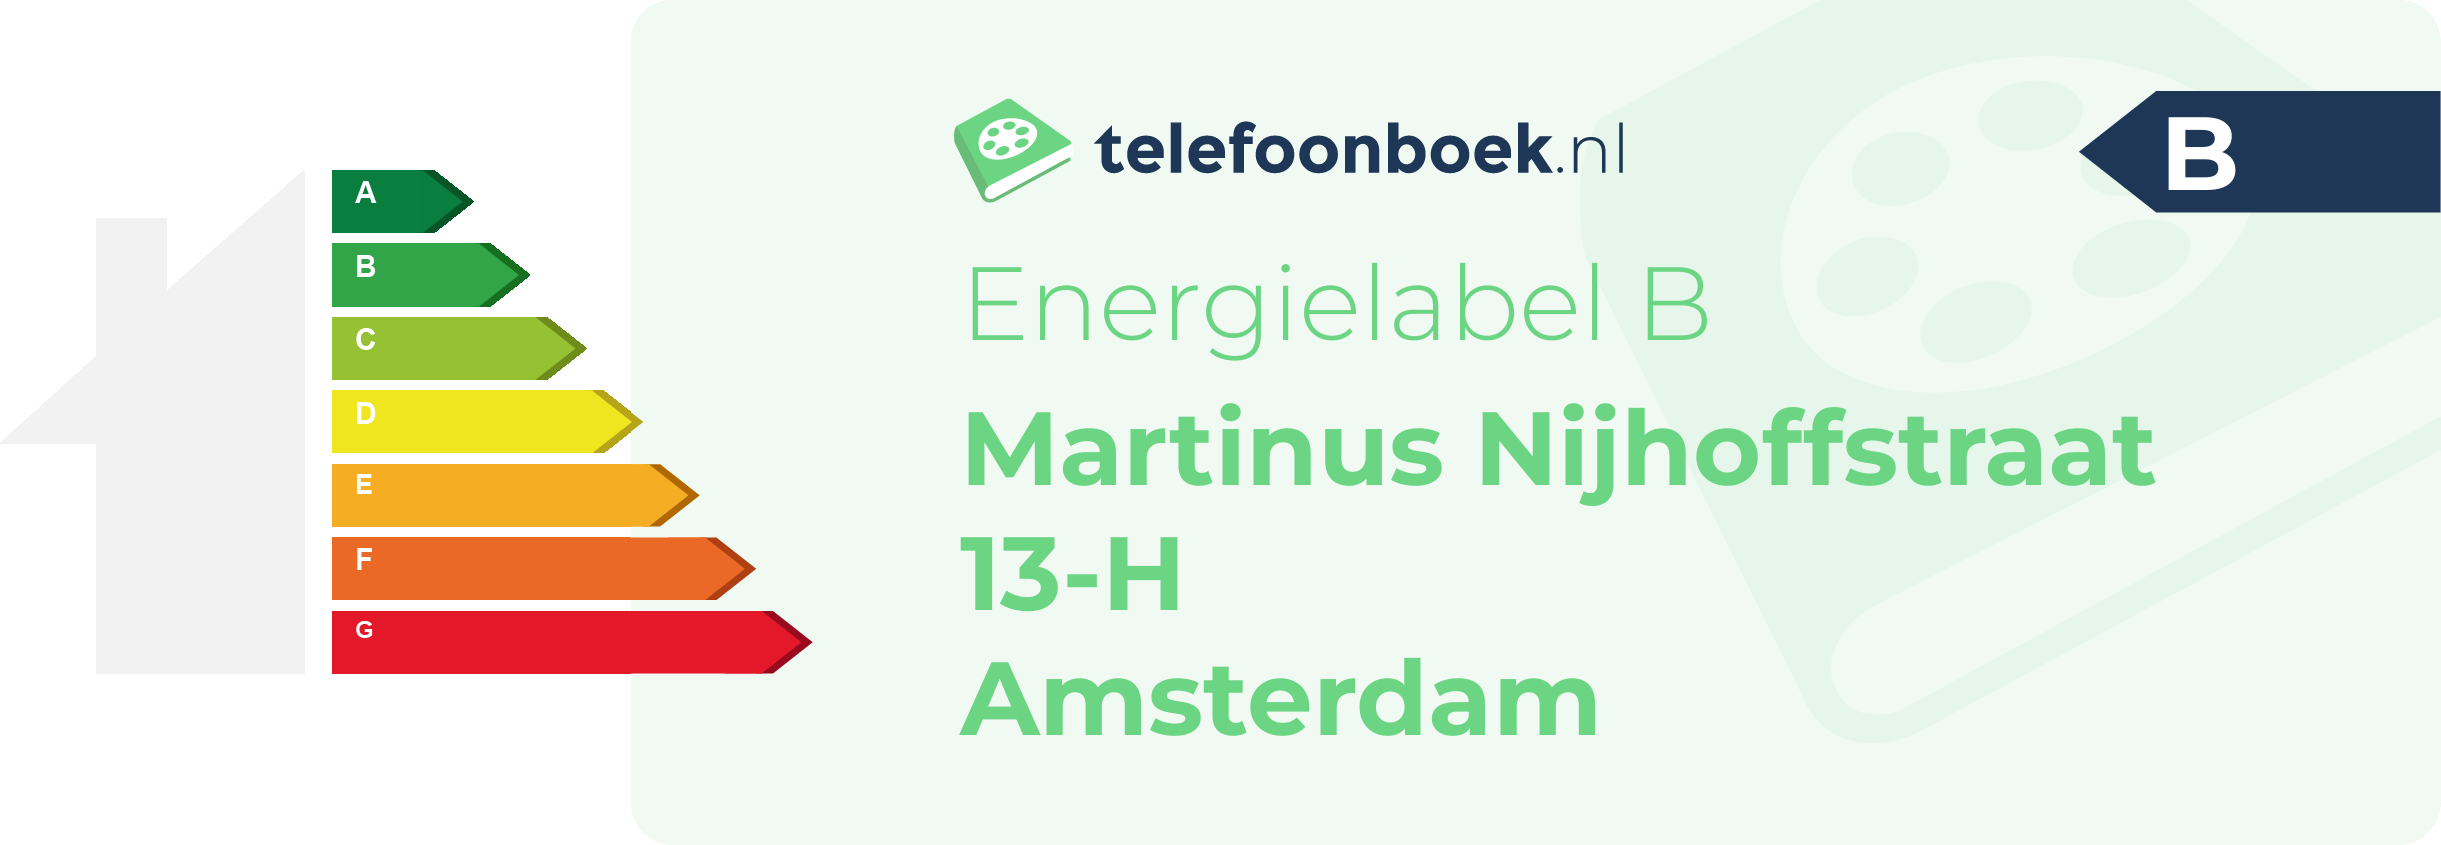 Energielabel Martinus Nijhoffstraat 13-H Amsterdam